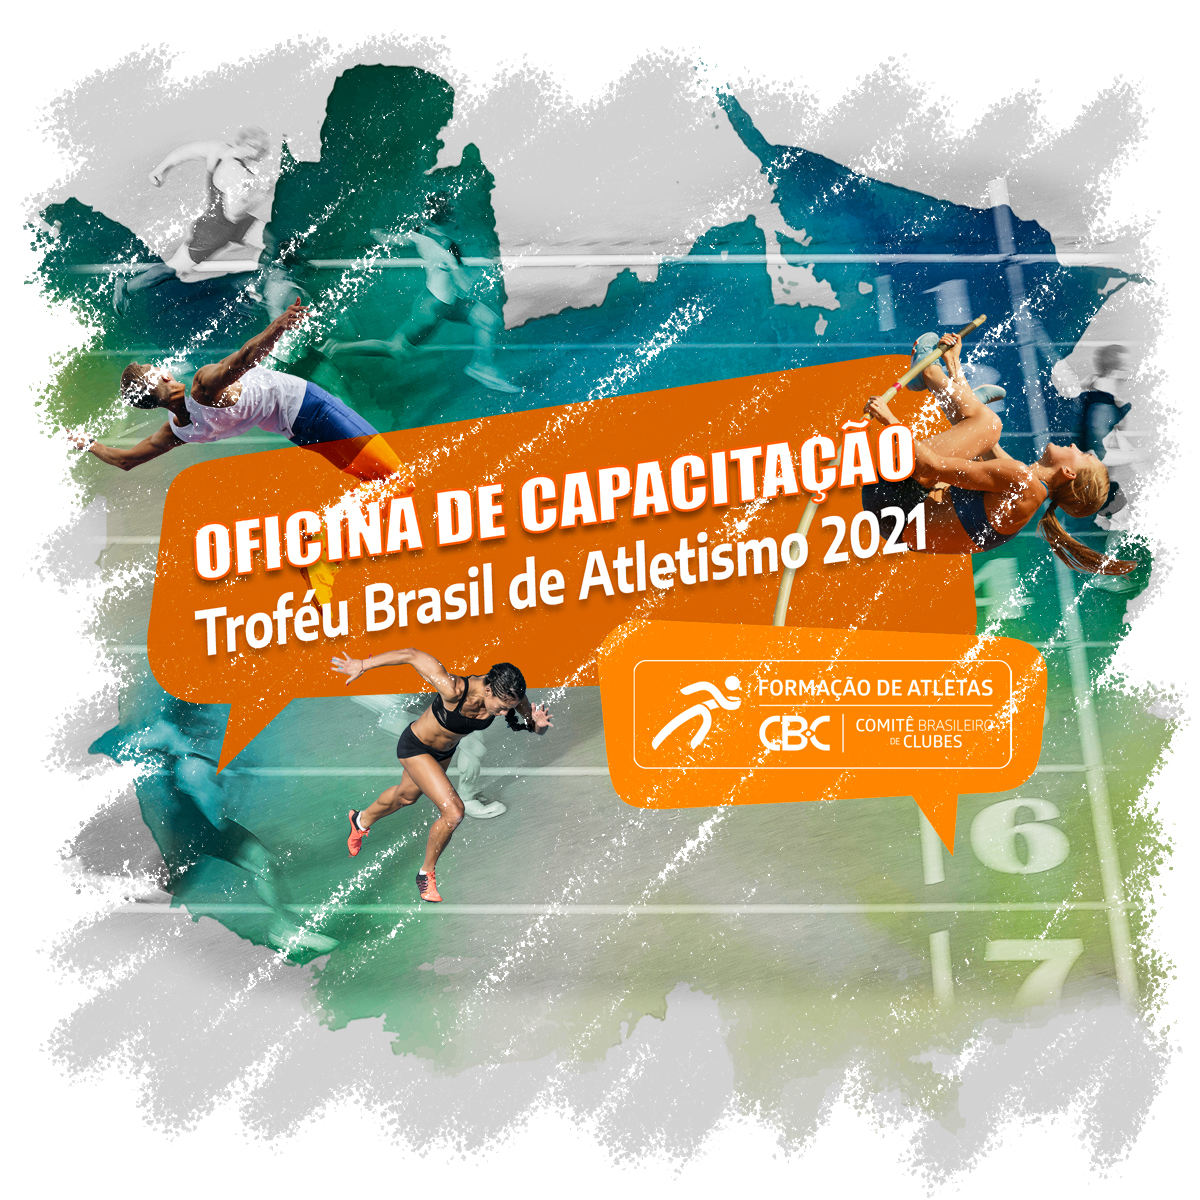 Oficina de Capacitação virtual para o CBI® - Troféu Brasil de Atletismo 2021